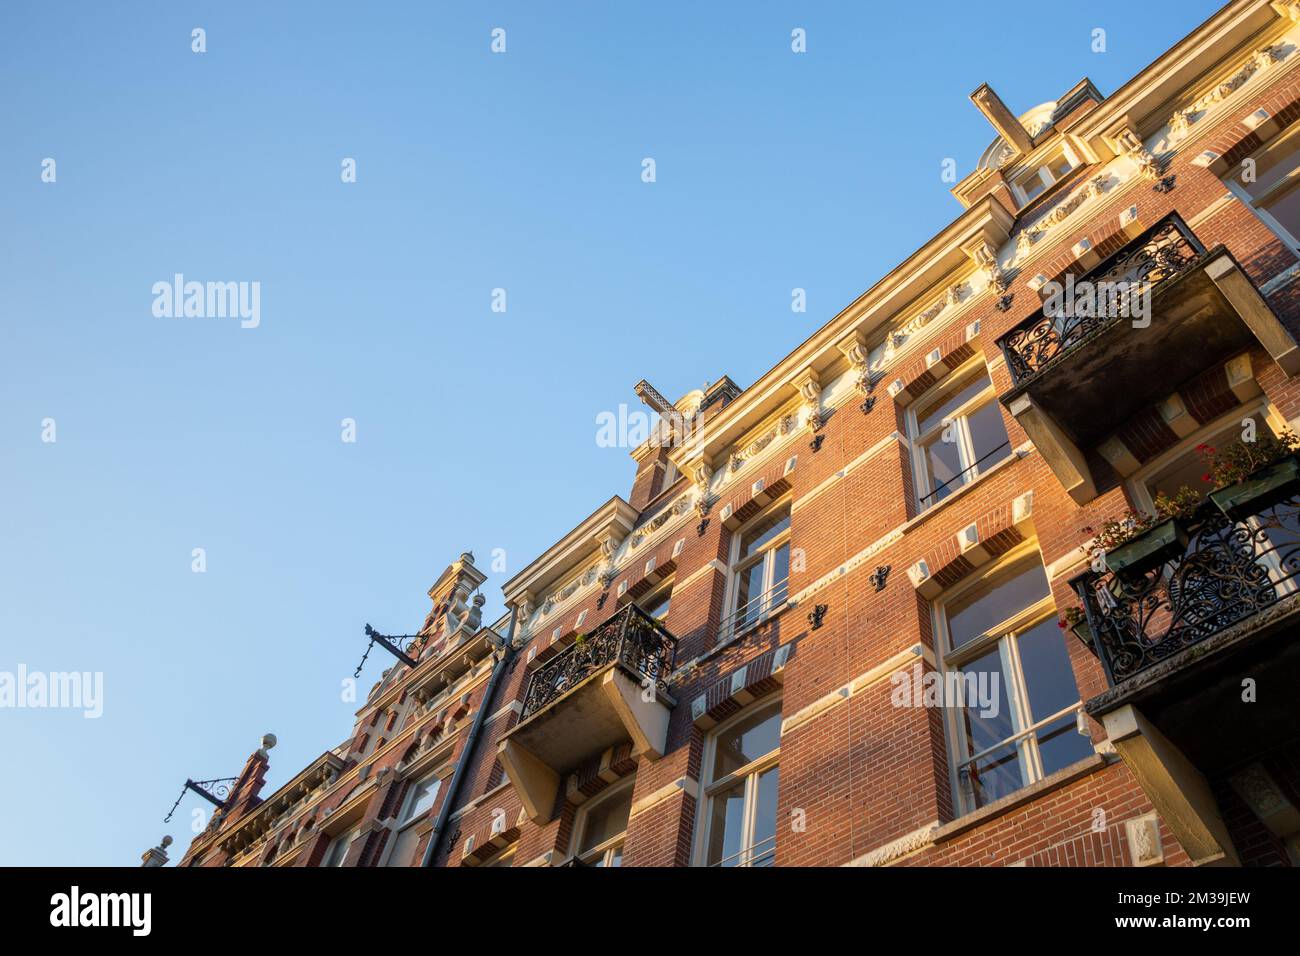 Amsterdam case o appartamenti con ganci al piano superiore per il sollevamento di mobili e oggetti pesanti, noto come Hijsbalk. Olanda del Nord, Paesi Bassi Foto Stock